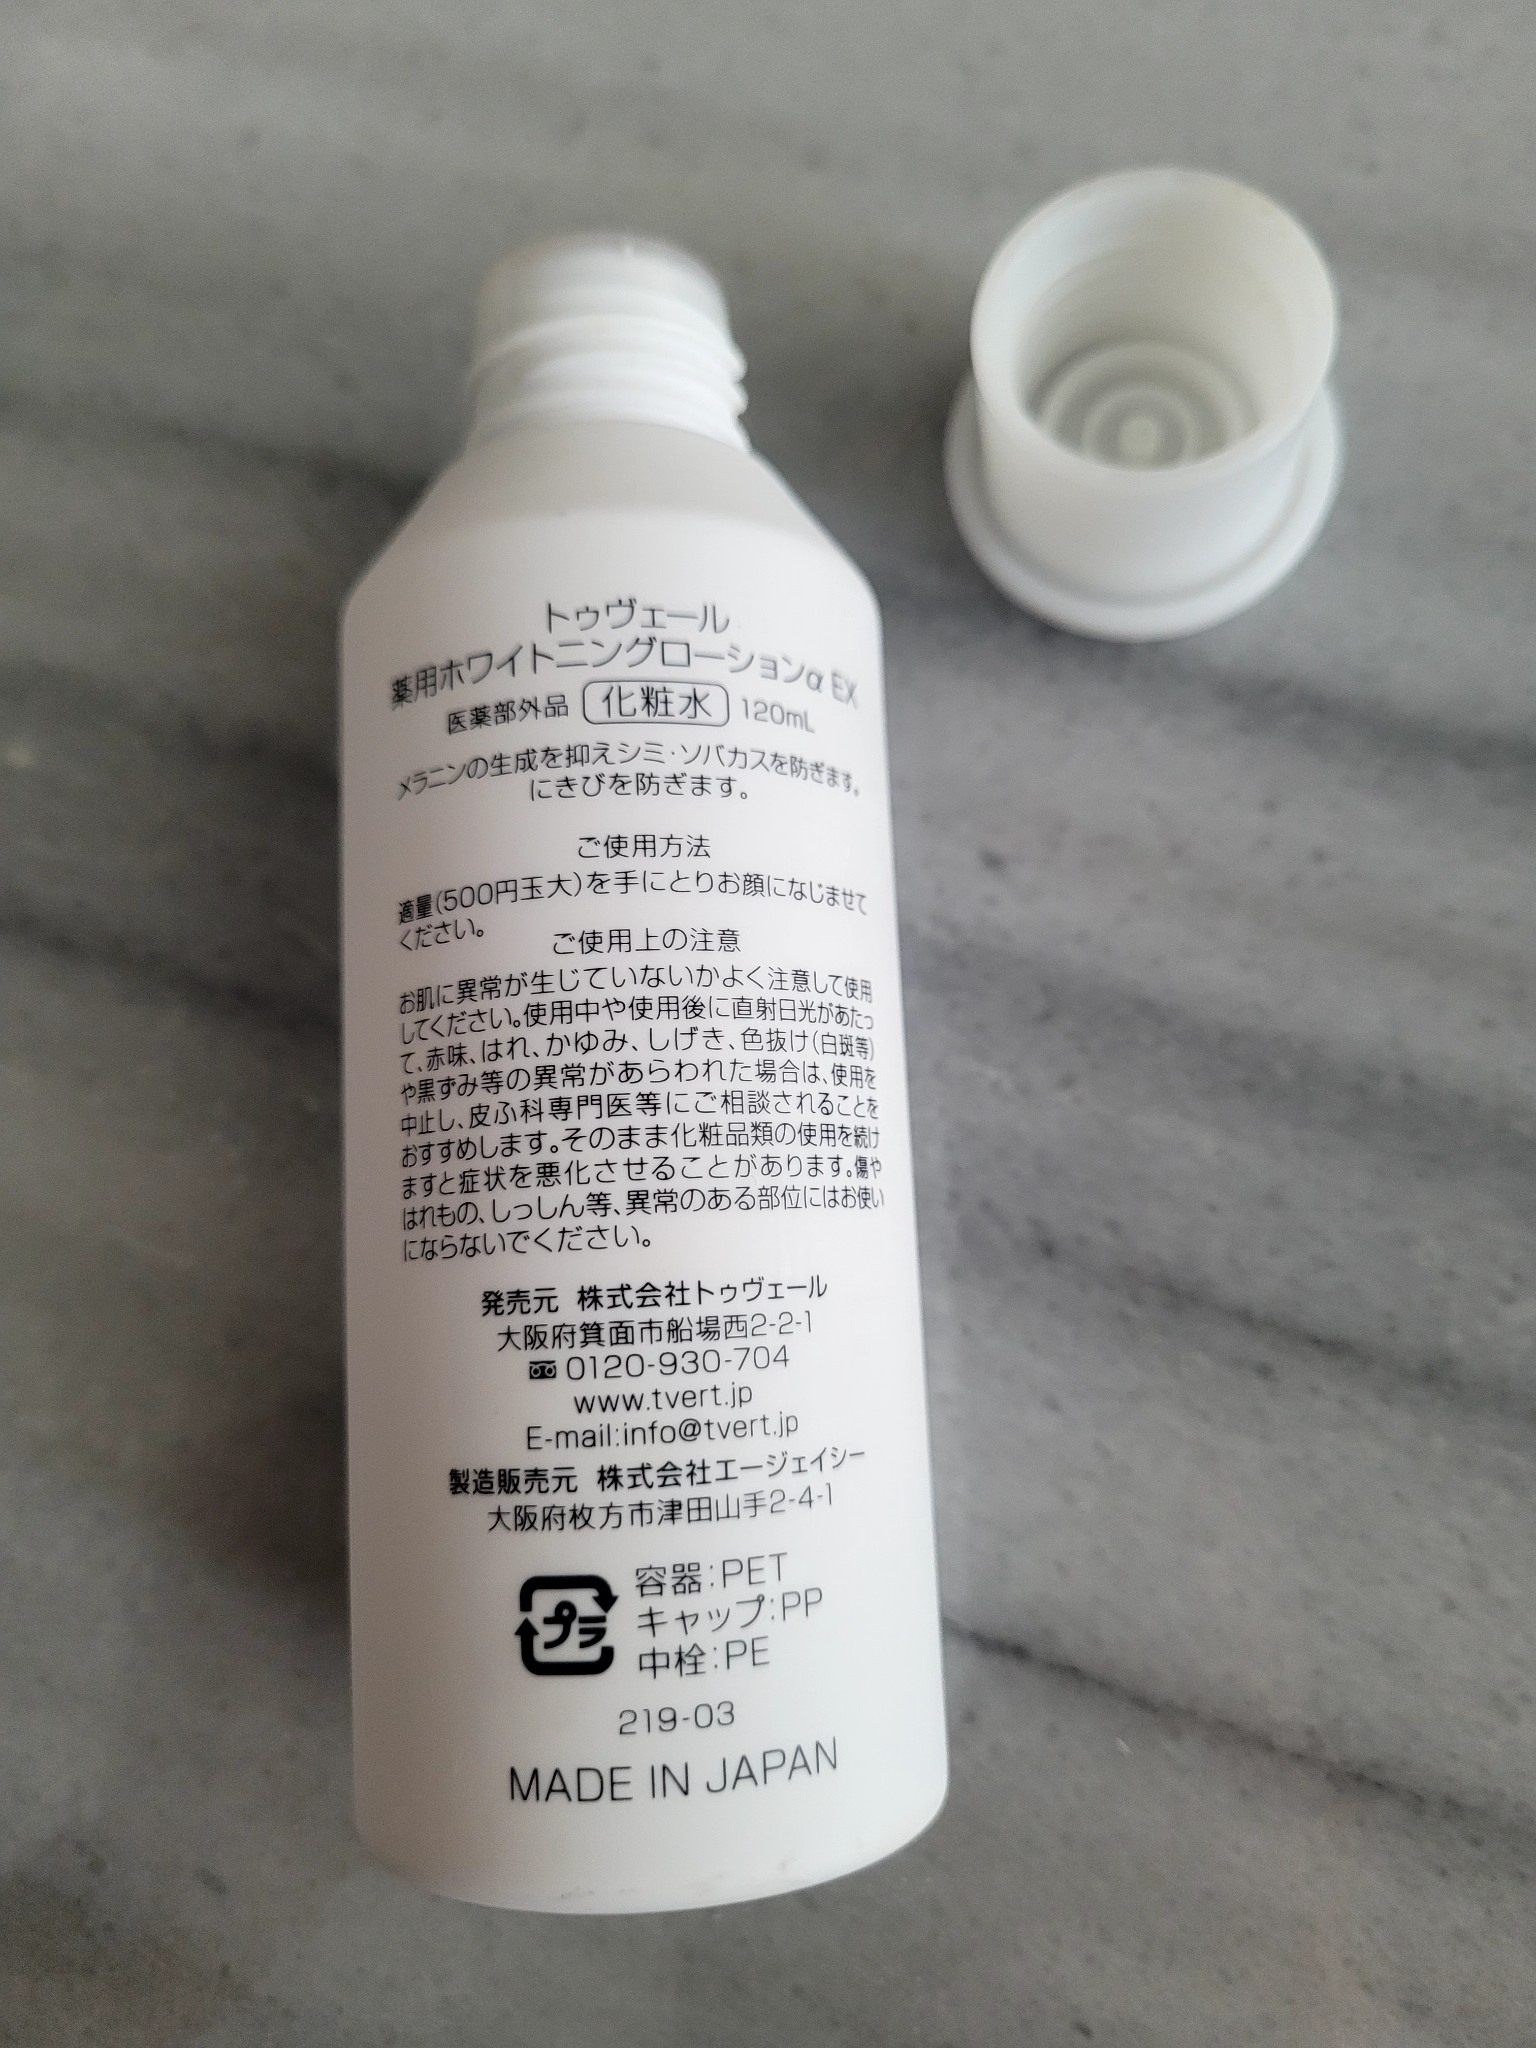 トゥヴェール / 薬用ホワイトニングローションα EXの公式商品情報 